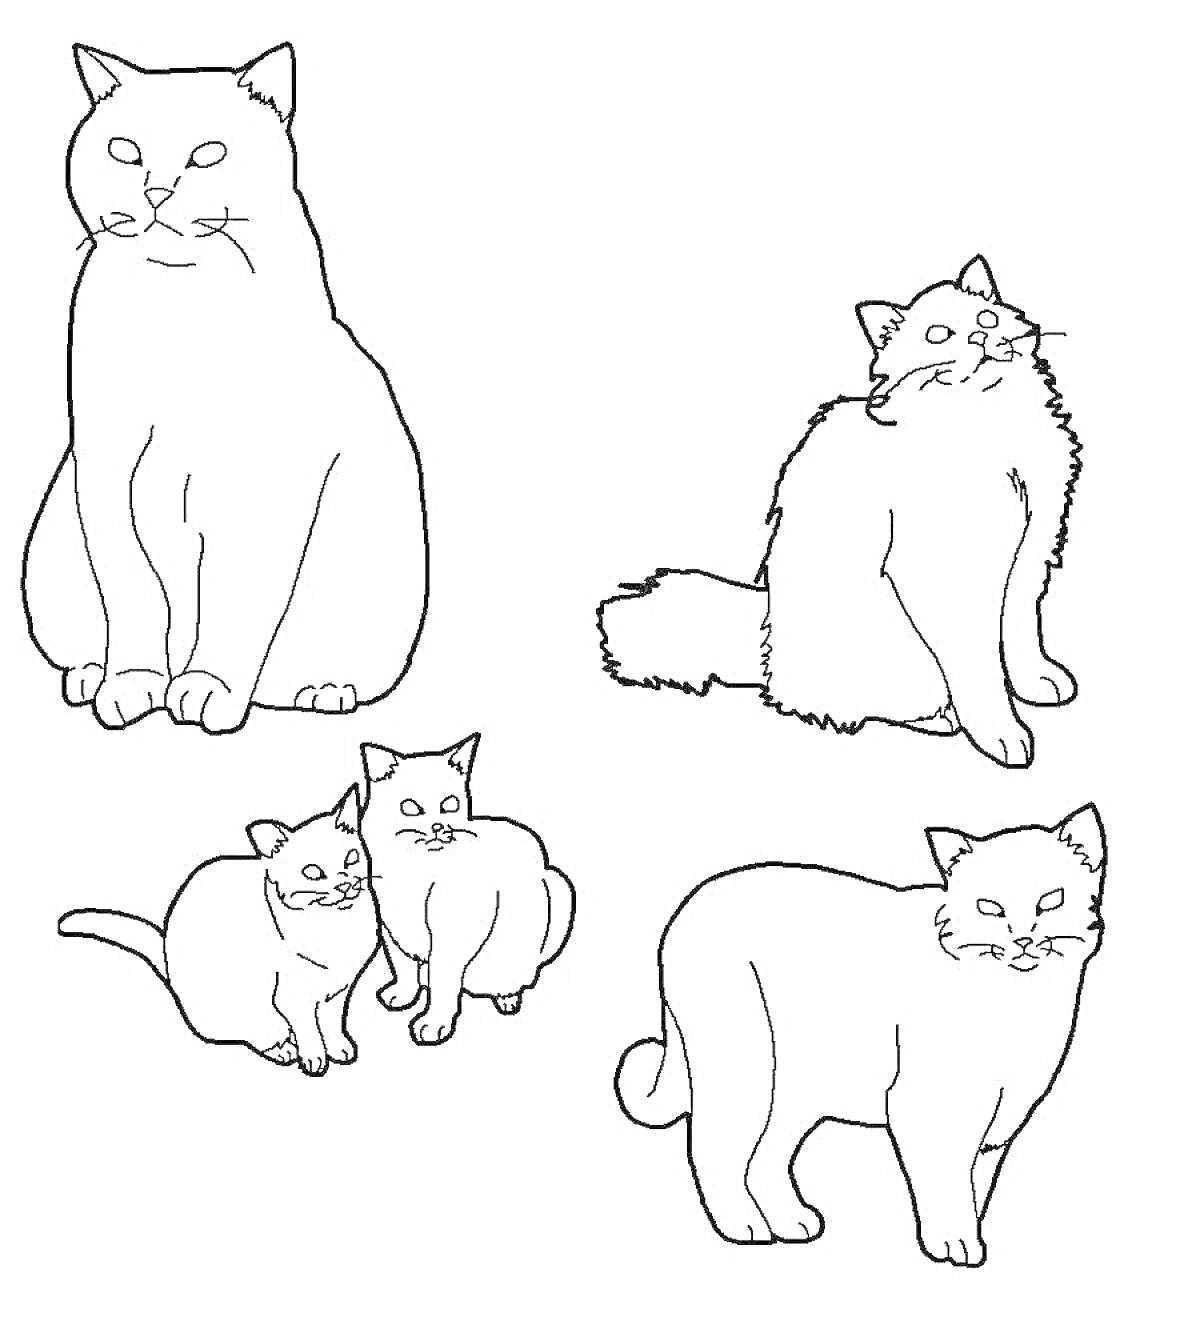 Раскраска Четыре британские кошки: сидящая кошка, пушистая кошка, две рядом стоящие кошки, и стоящая кошка